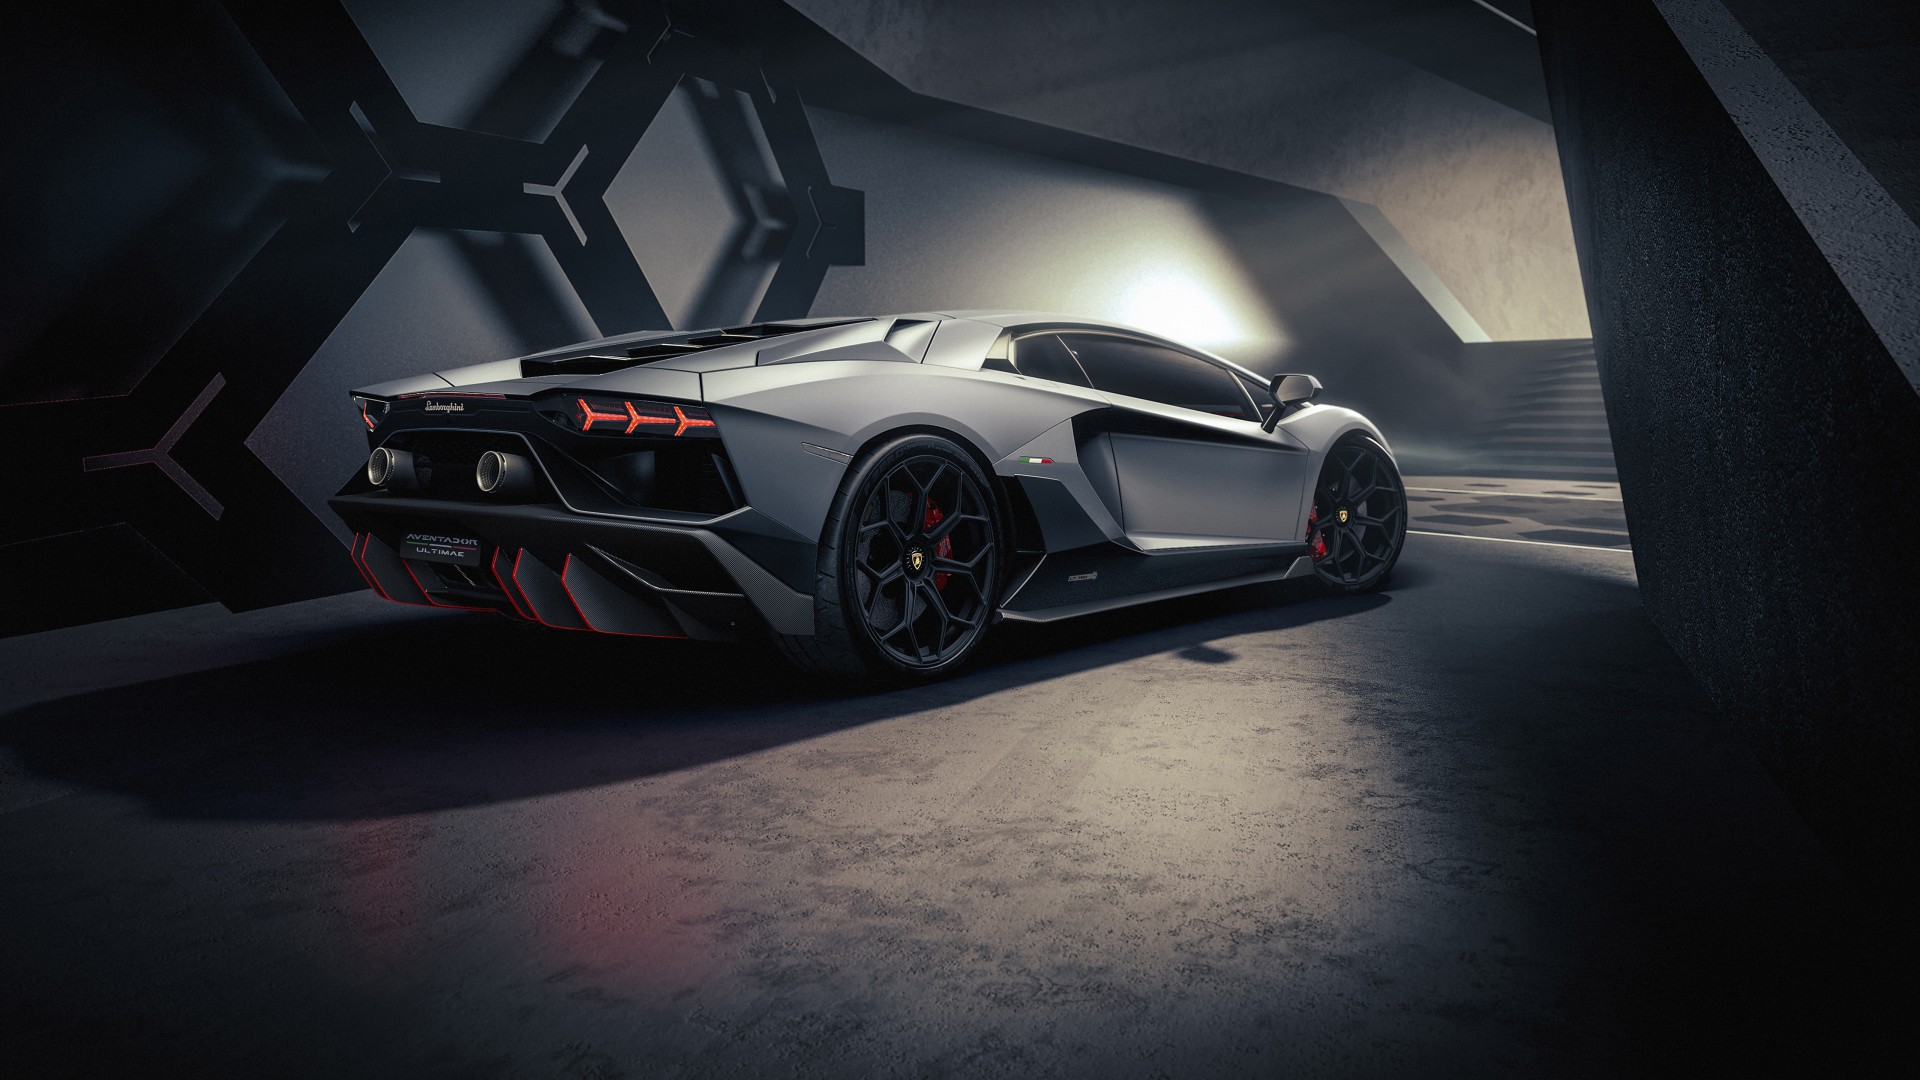 Lamborghini Aventador là một cái tên gắn liền với sự tinh tế và đẳng cấp. Hình ảnh chiếc xe đắt giá này chắc chắn sẽ khiến bạn bị khuất phục bởi thiết kế hoàn hảo, động cơ mạnh mẽ và các tính năng tiên tiến nhất. 